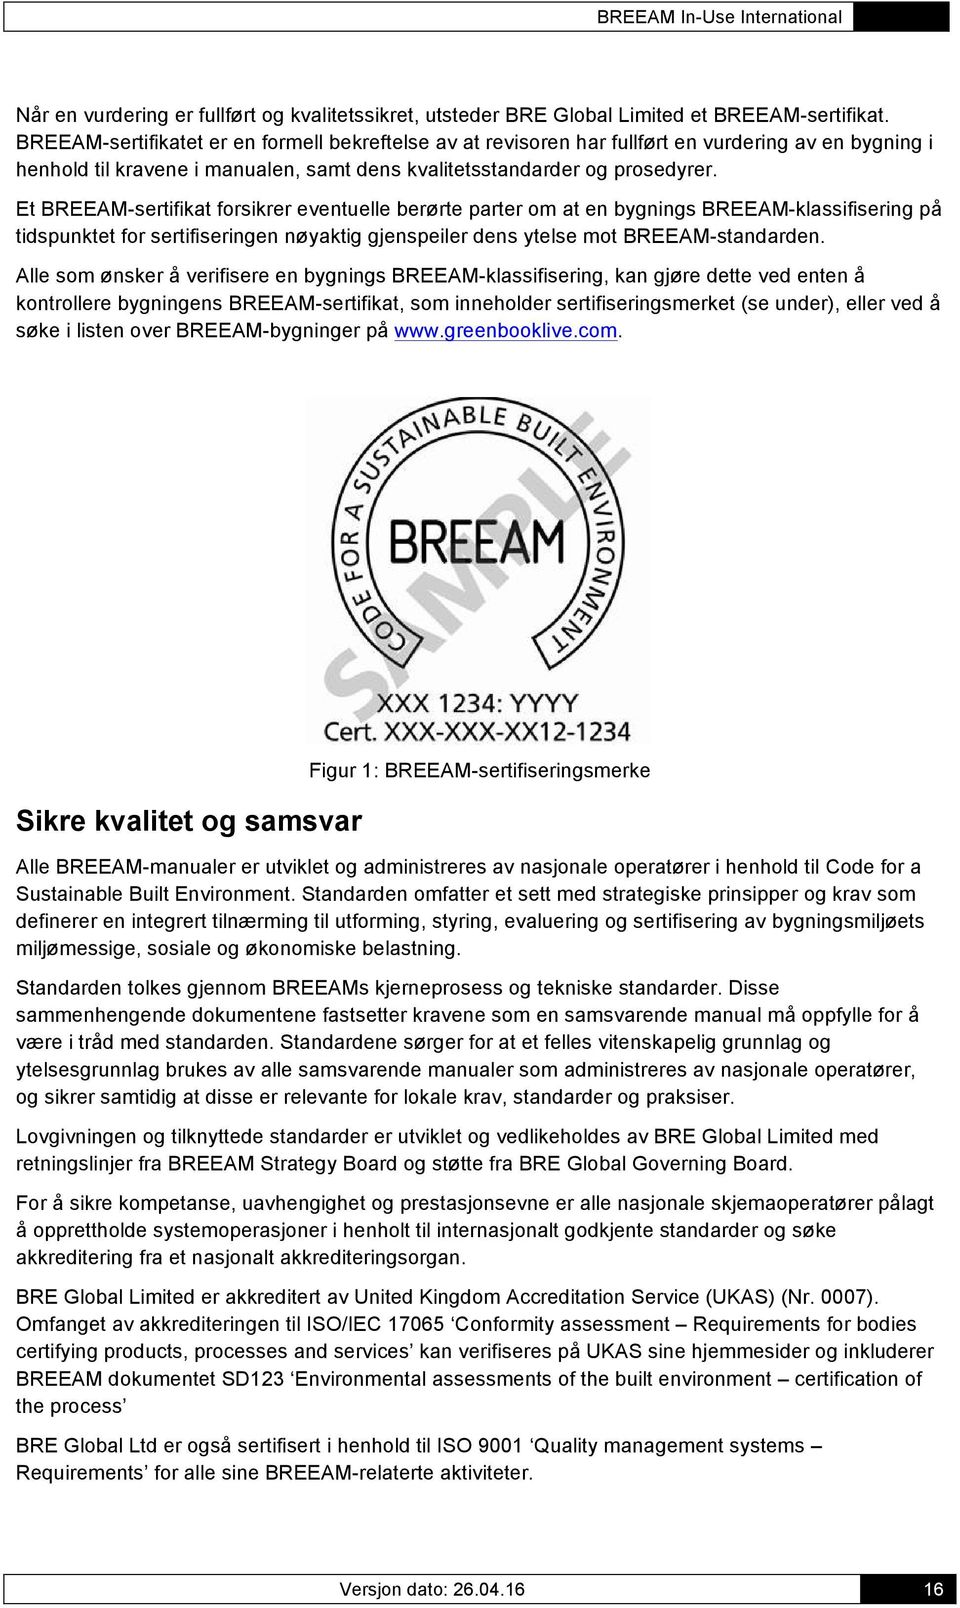 Et BREEAM-sertifikat forsikrer eventuelle berørte parter om at en bygnings BREEAM-klassifisering på tidspunktet for sertifiseringen nøyaktig gjenspeiler dens ytelse mot BREEAM-standarden.